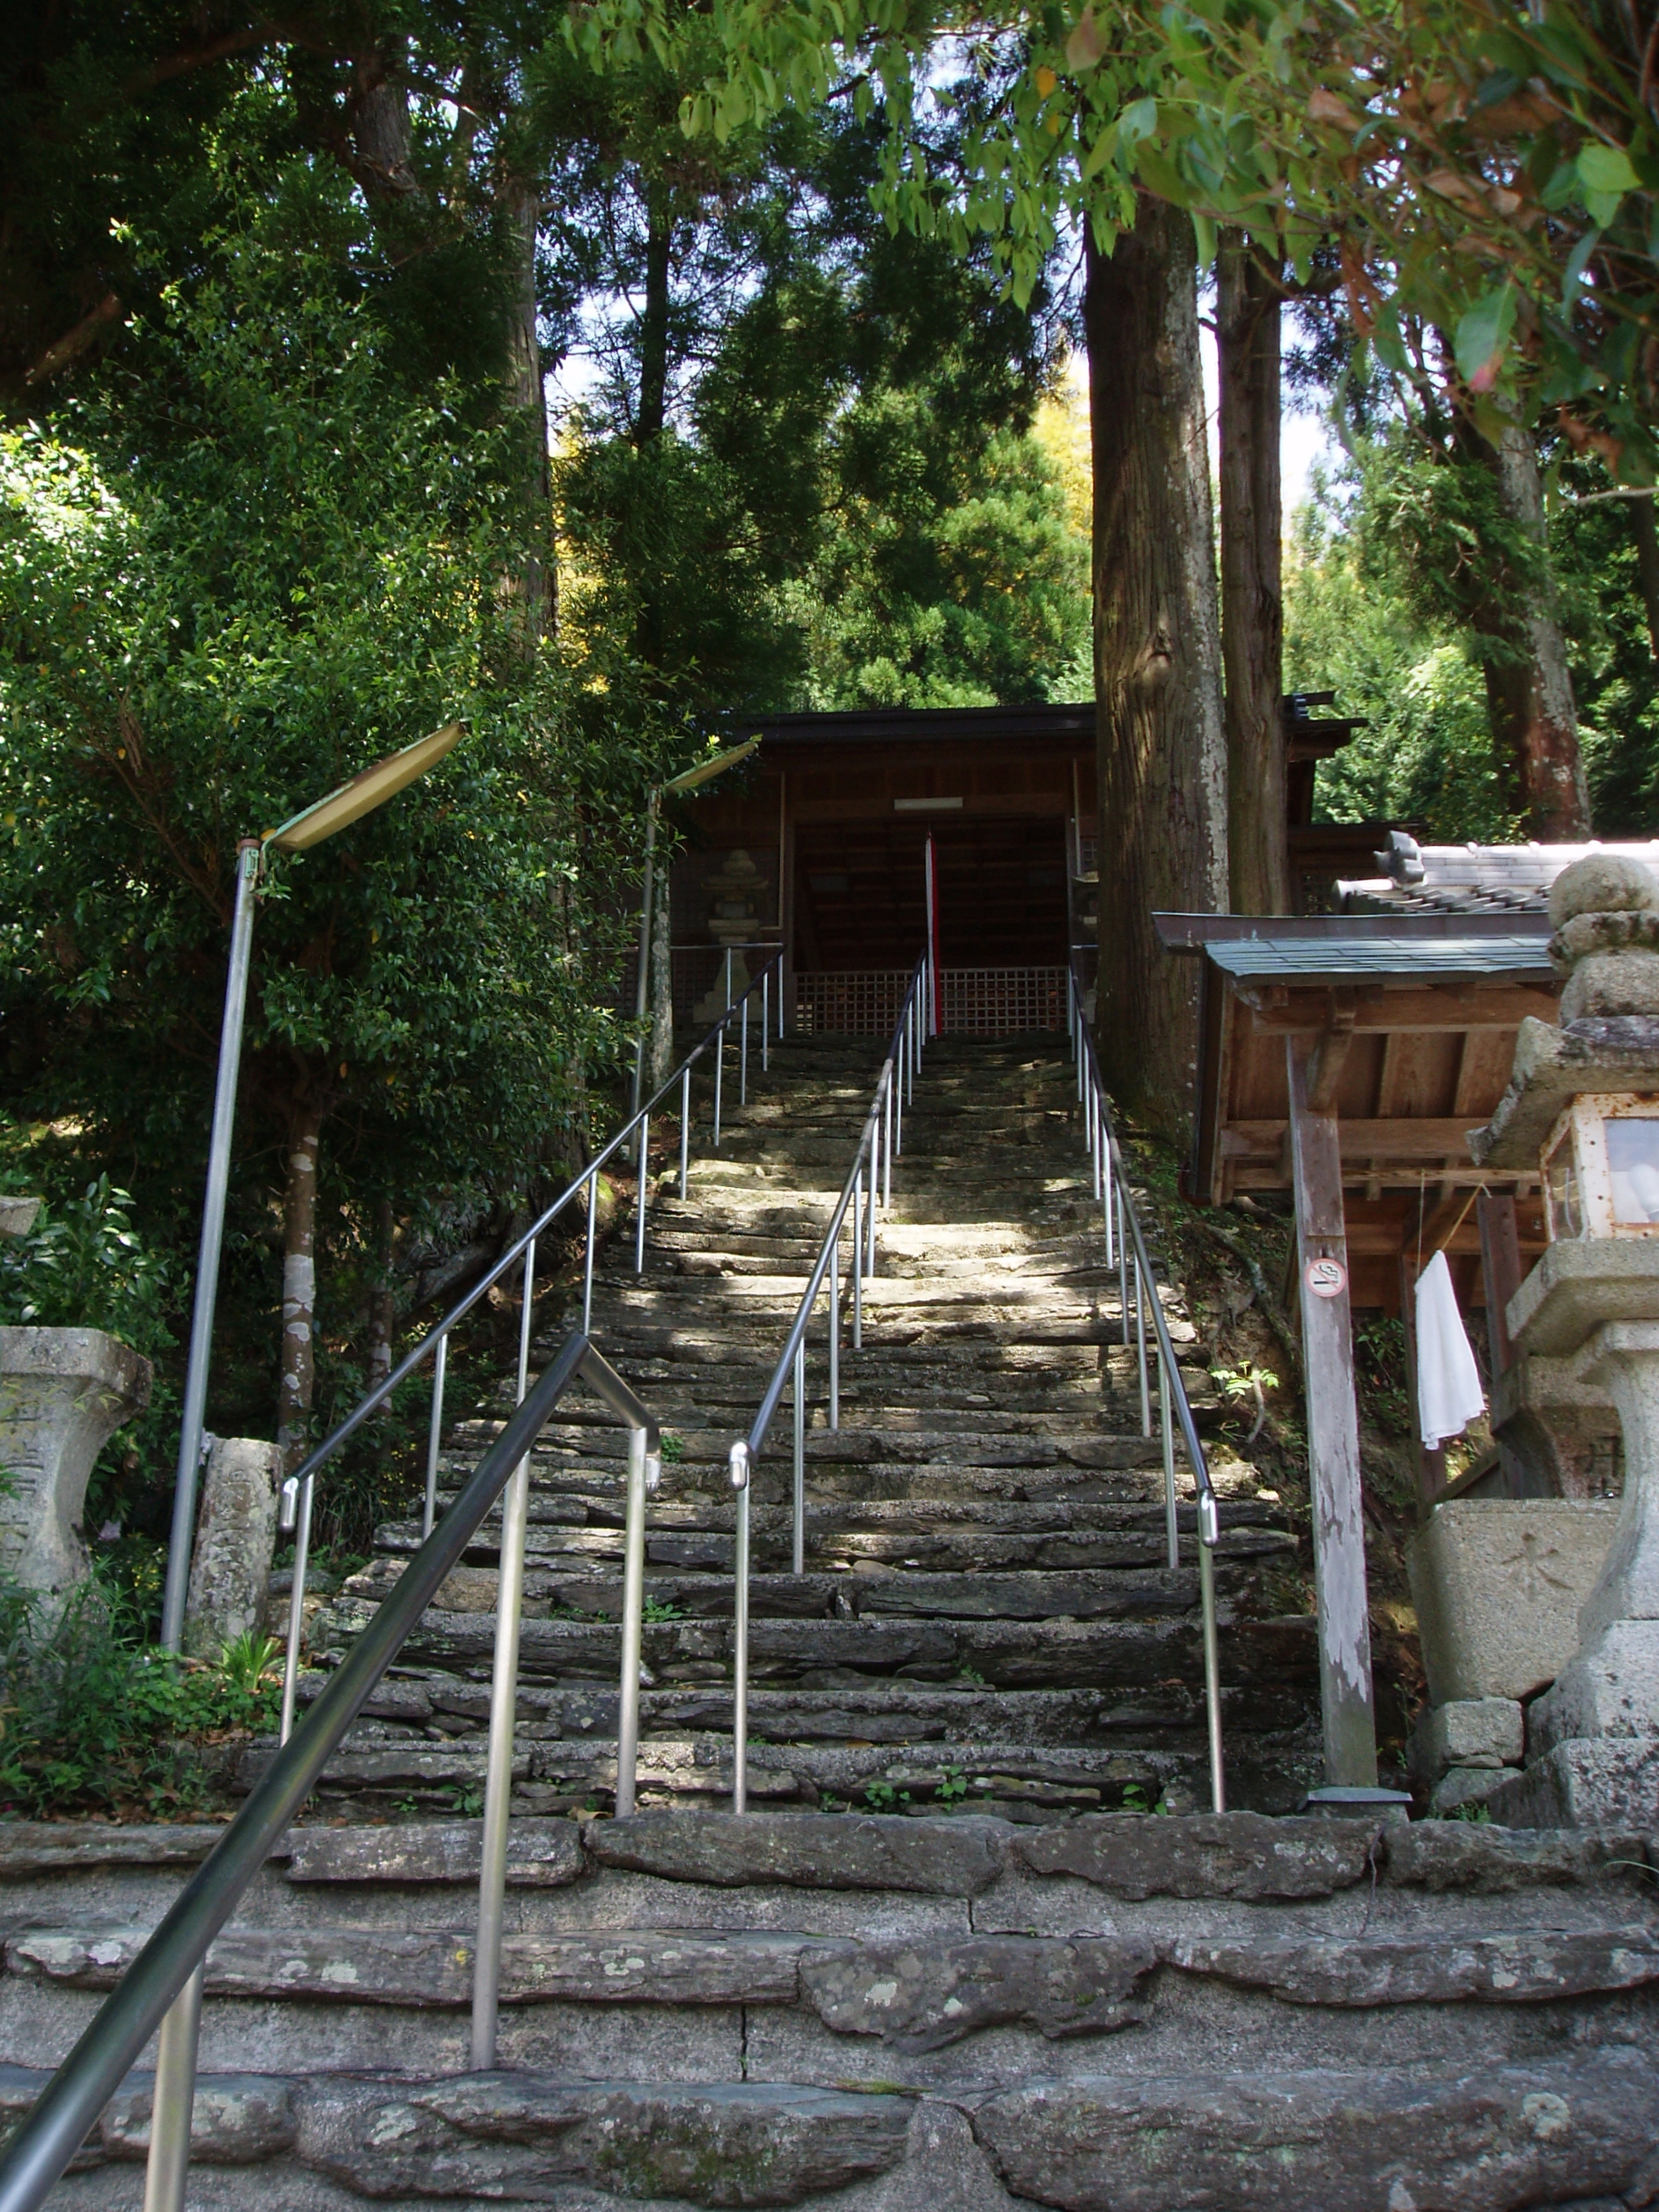 坂の上のお社 – Small shrine